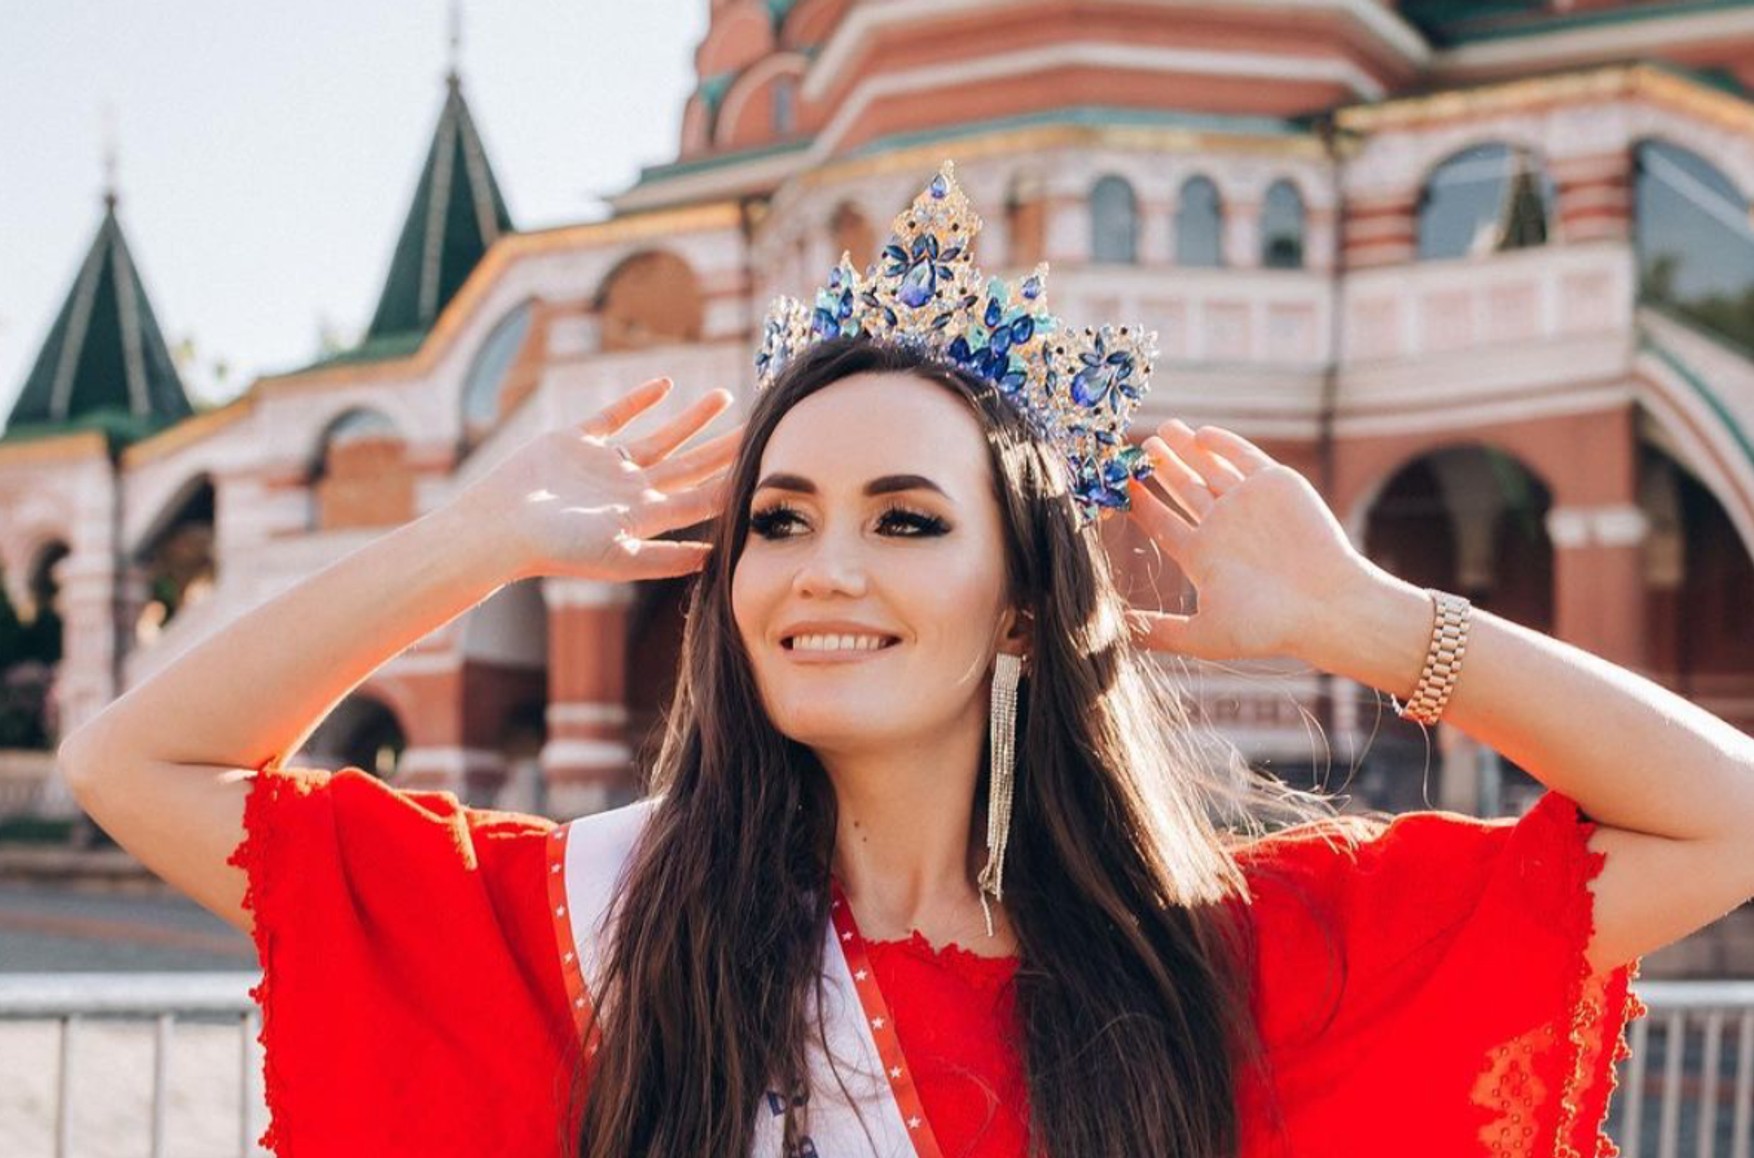 Участница из России победила в конкурсе «Миссис Вселенная» впервые в его истории